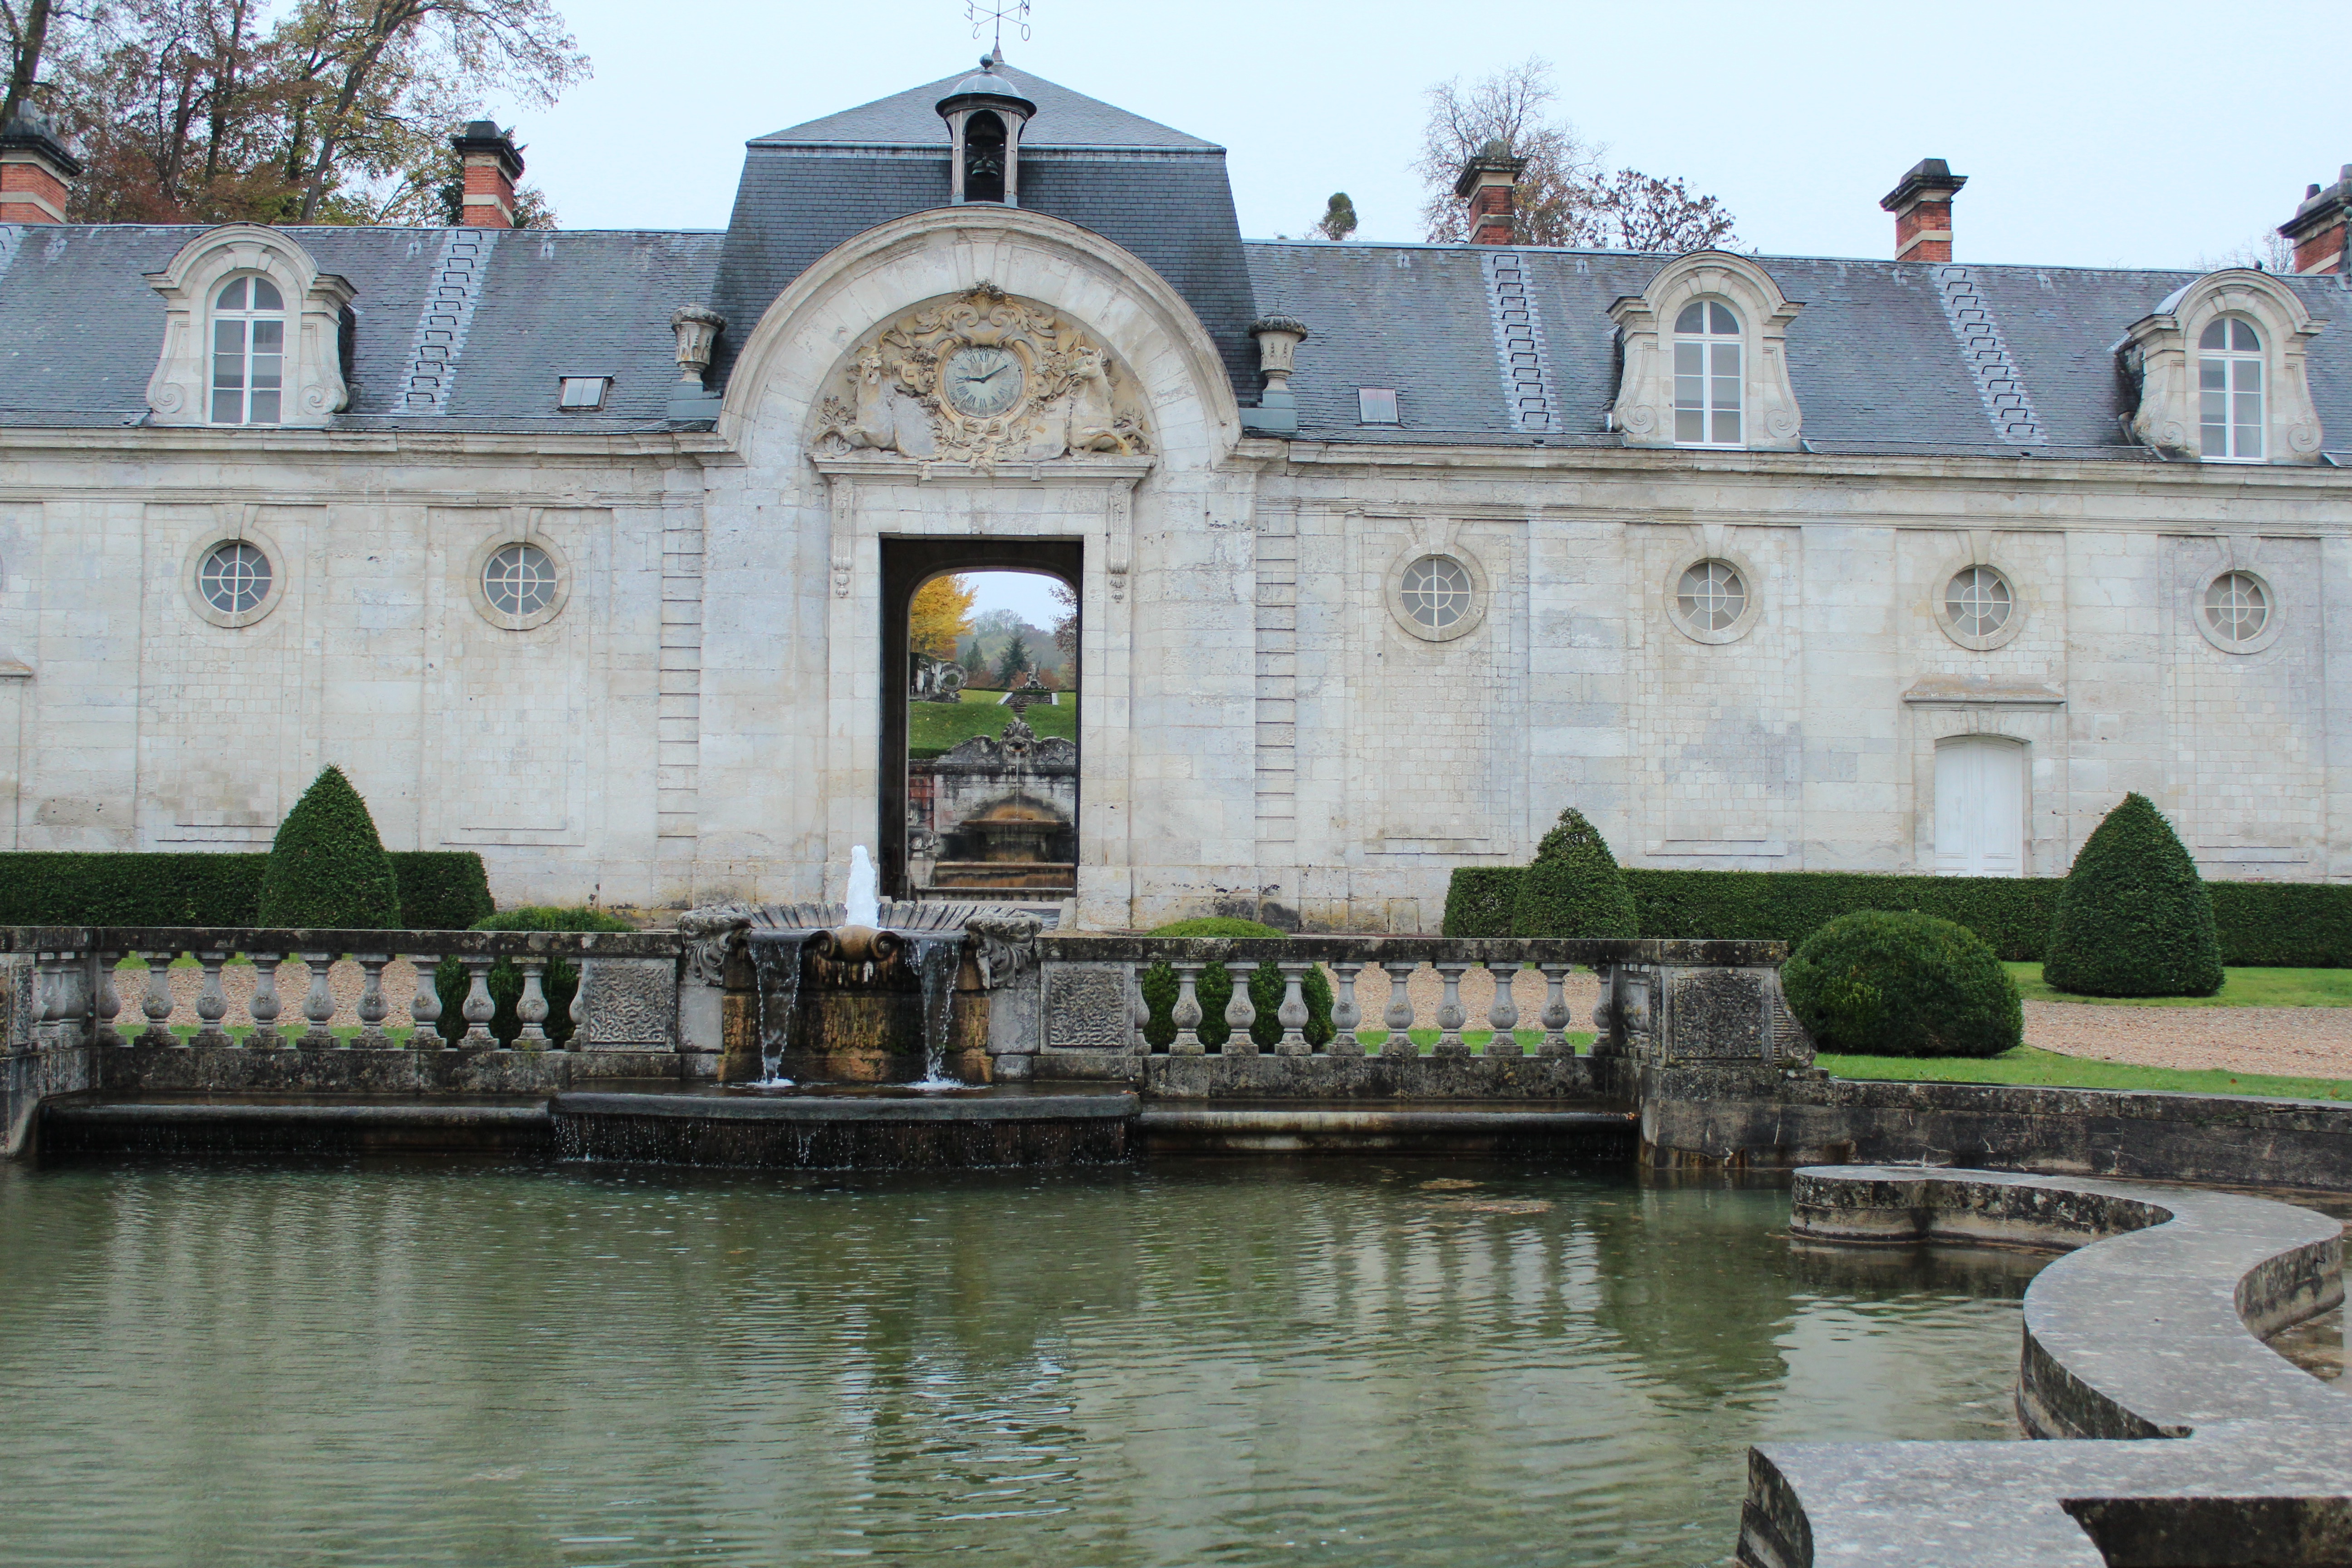 My Paris Trip, "'S Marvelous." Château de Bizy, Vernon, France